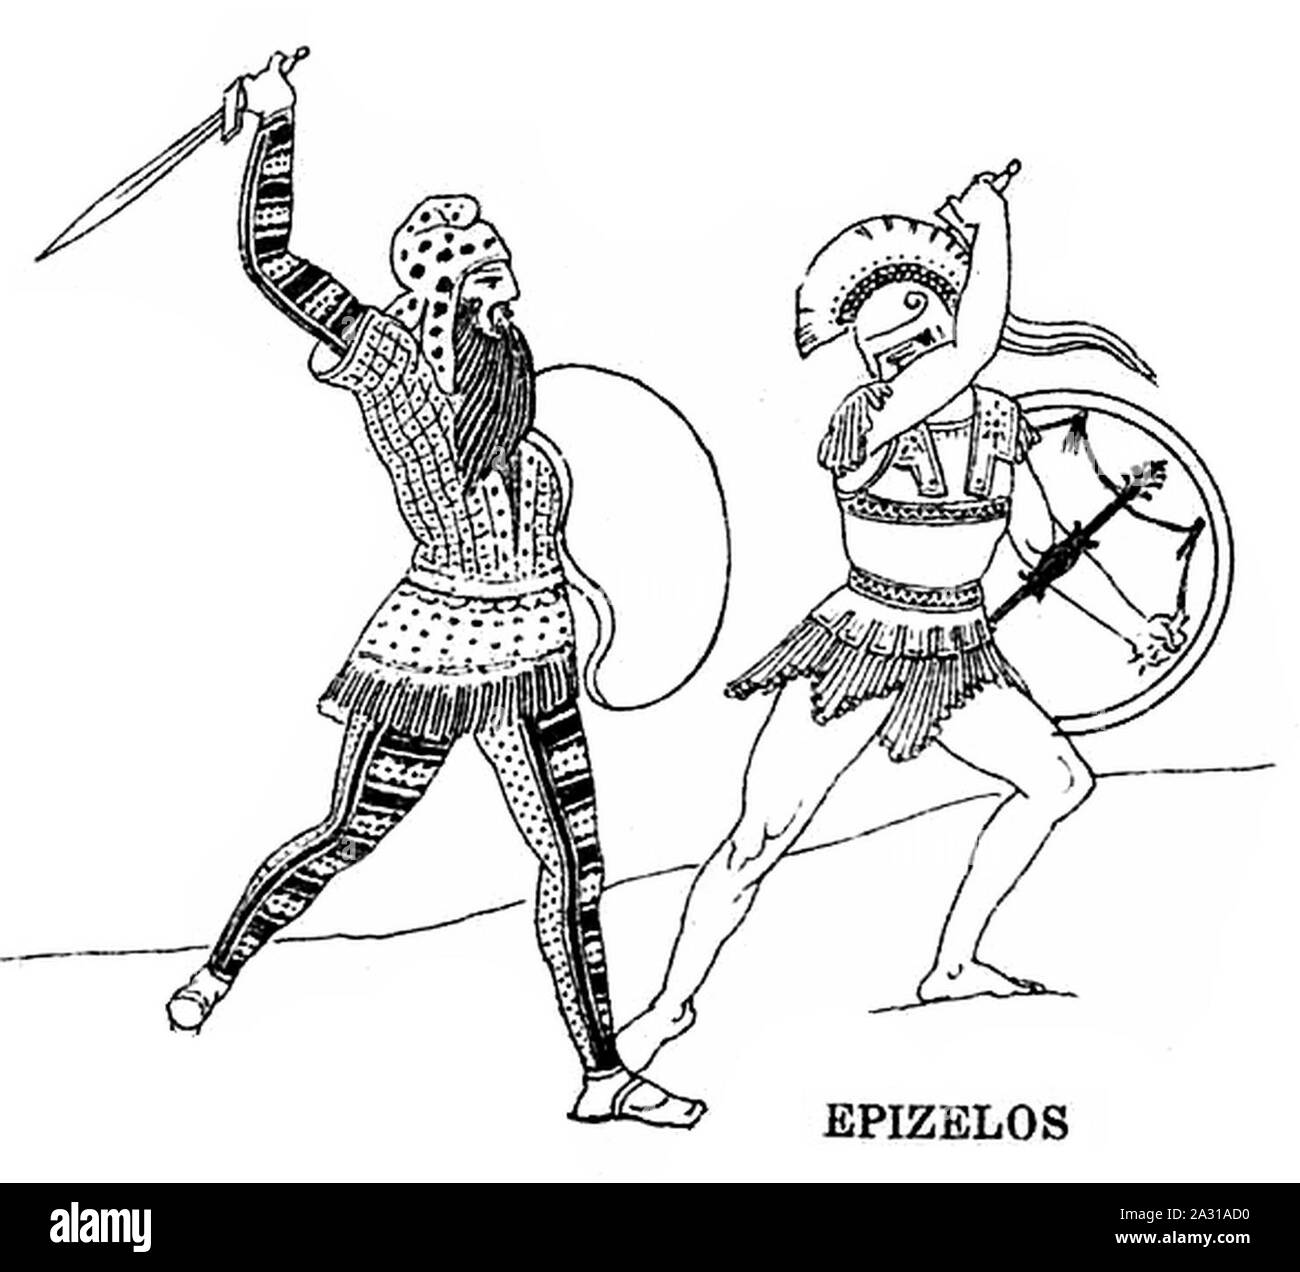 Epizelos Kampf gegen die Perser in der Schlacht von Marathon in der Stoa Poikile (auflösen). Stockfoto